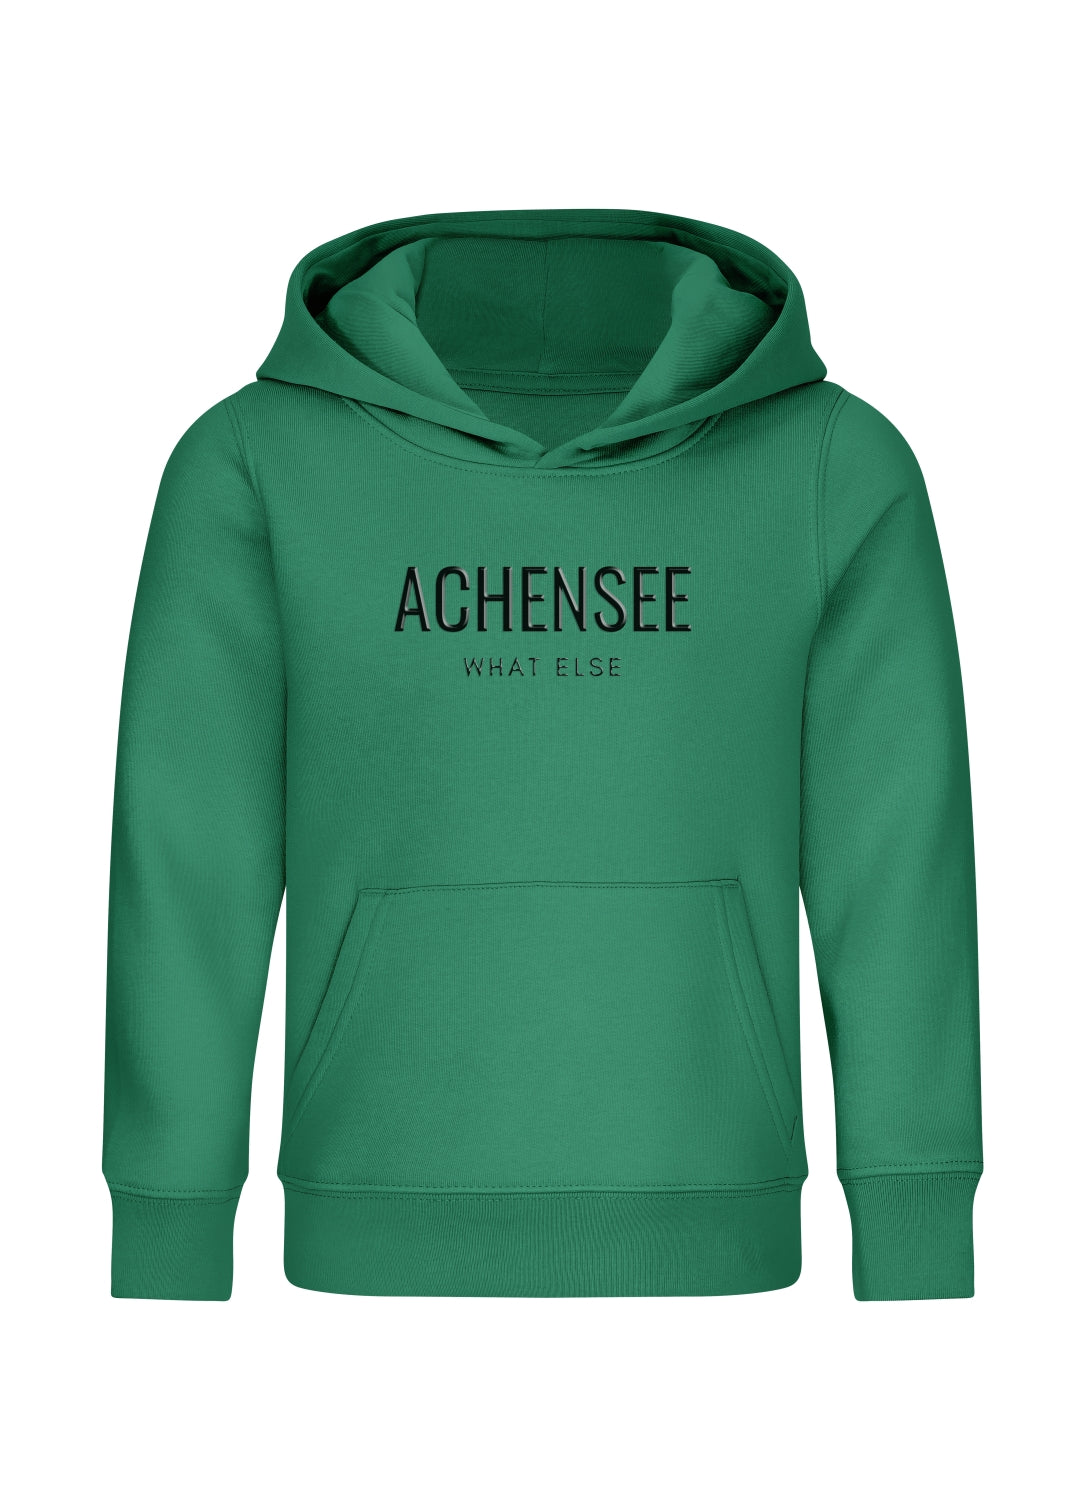 Achensee - What Else (Hoodie Kinder) Achensee - What Else (Hoodie Kinder)